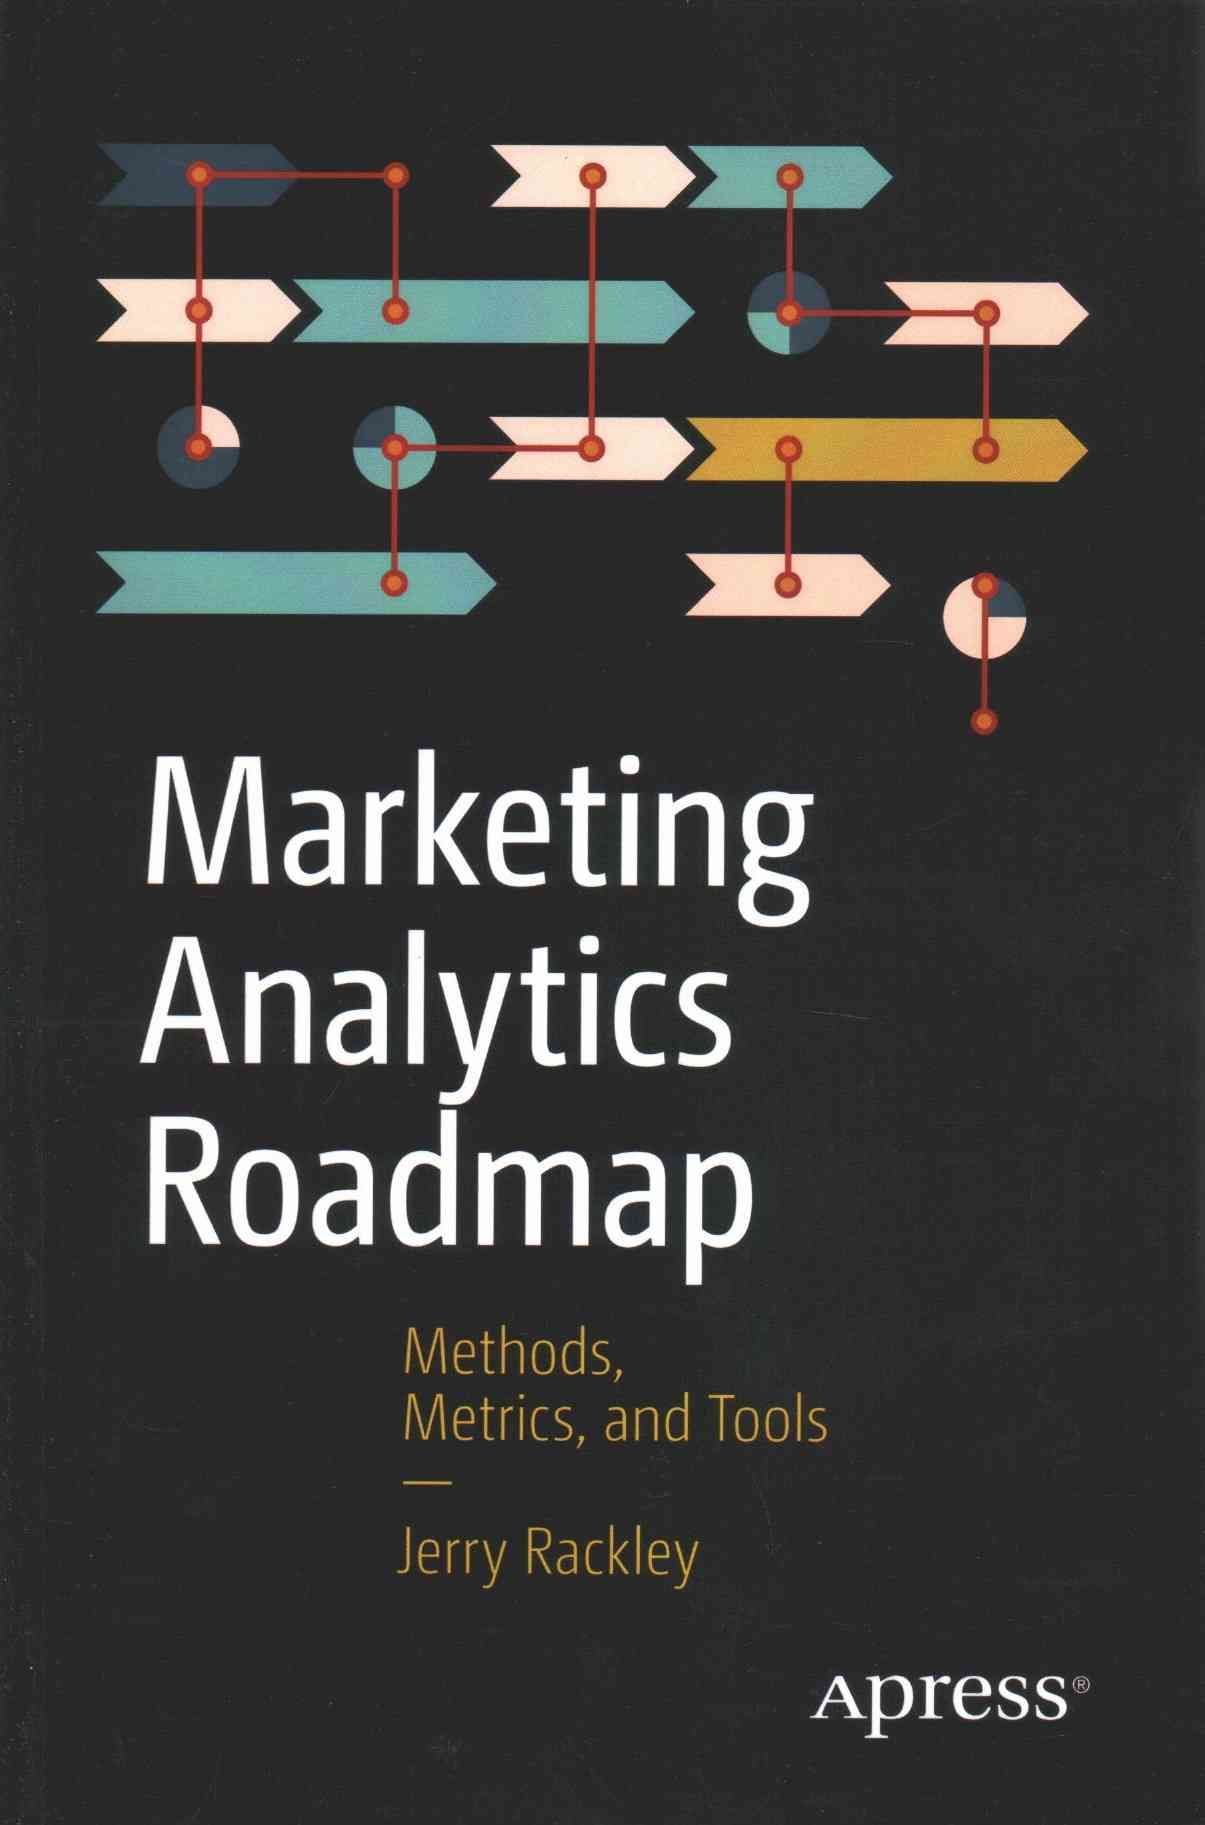 Marketing Analytics Roadmap